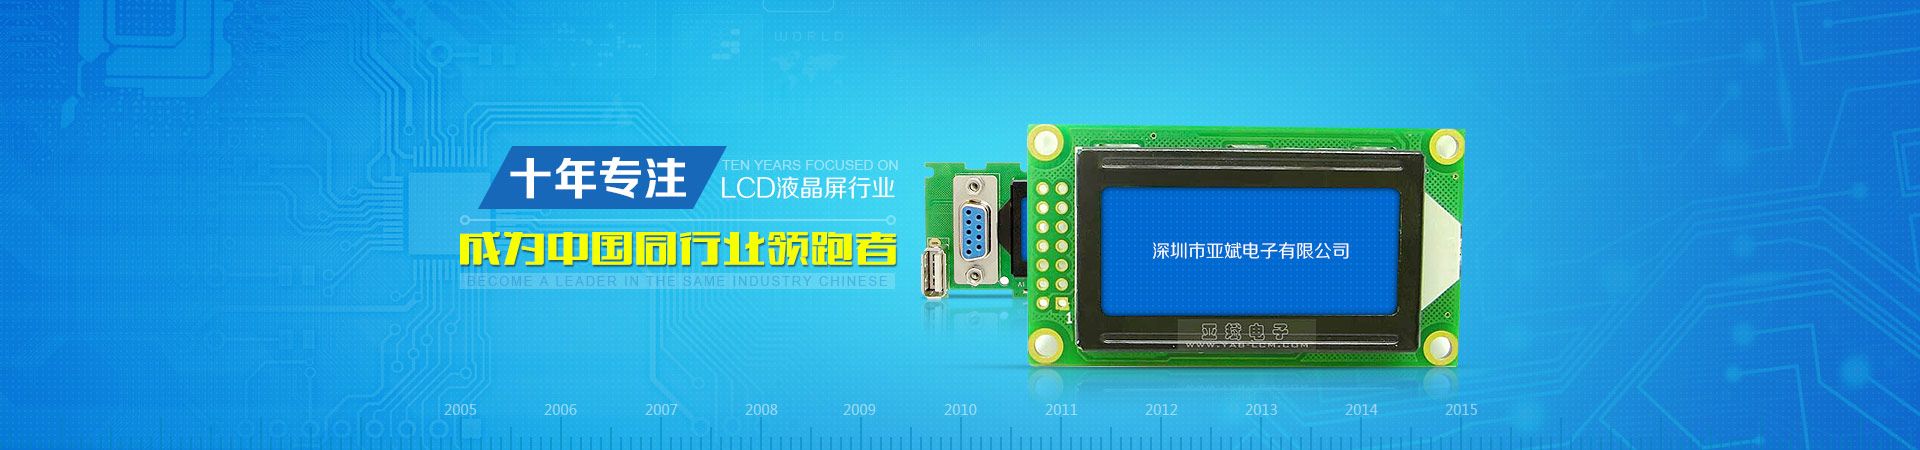 十年专注LCD液晶屏行业 成为中国同行业领跑者